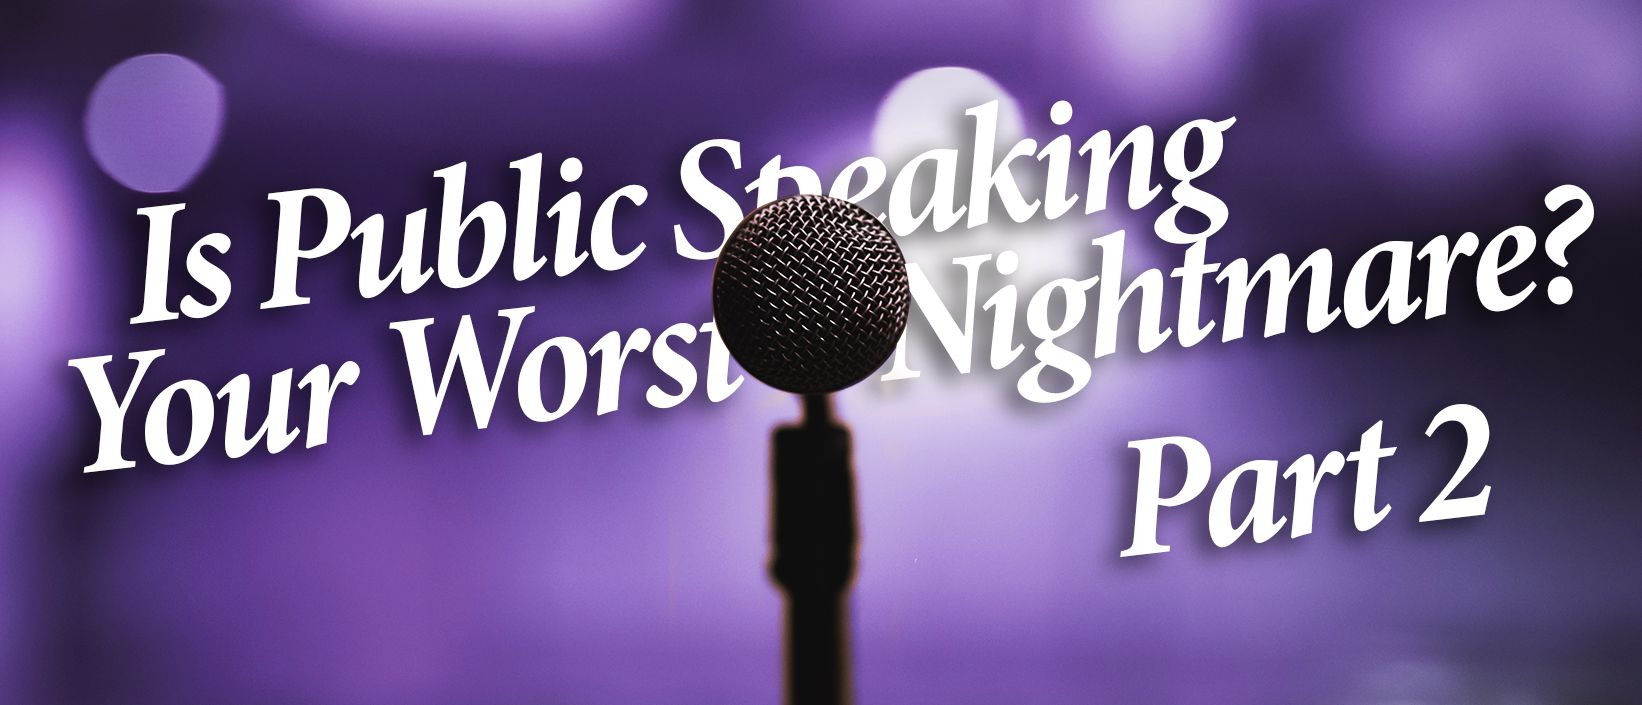 Public Speaking Nightmare Part 2